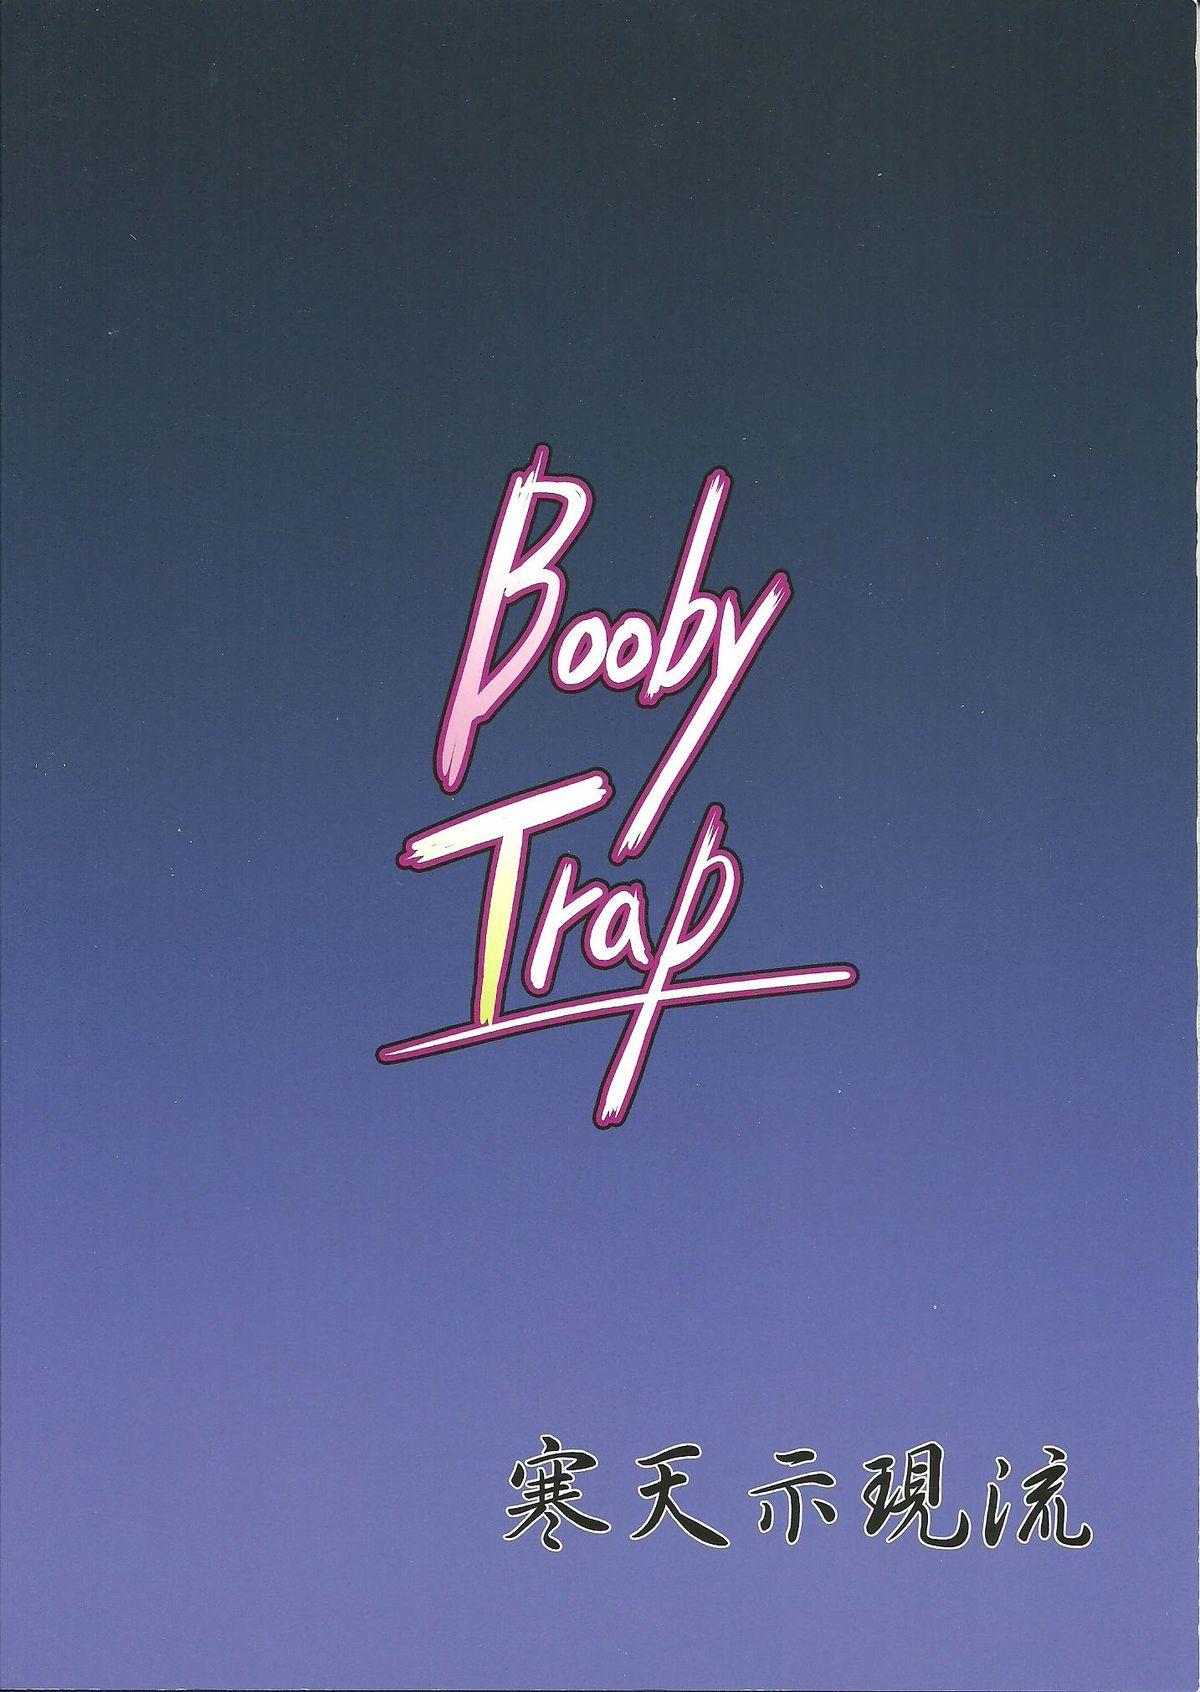 Booby Trap 29